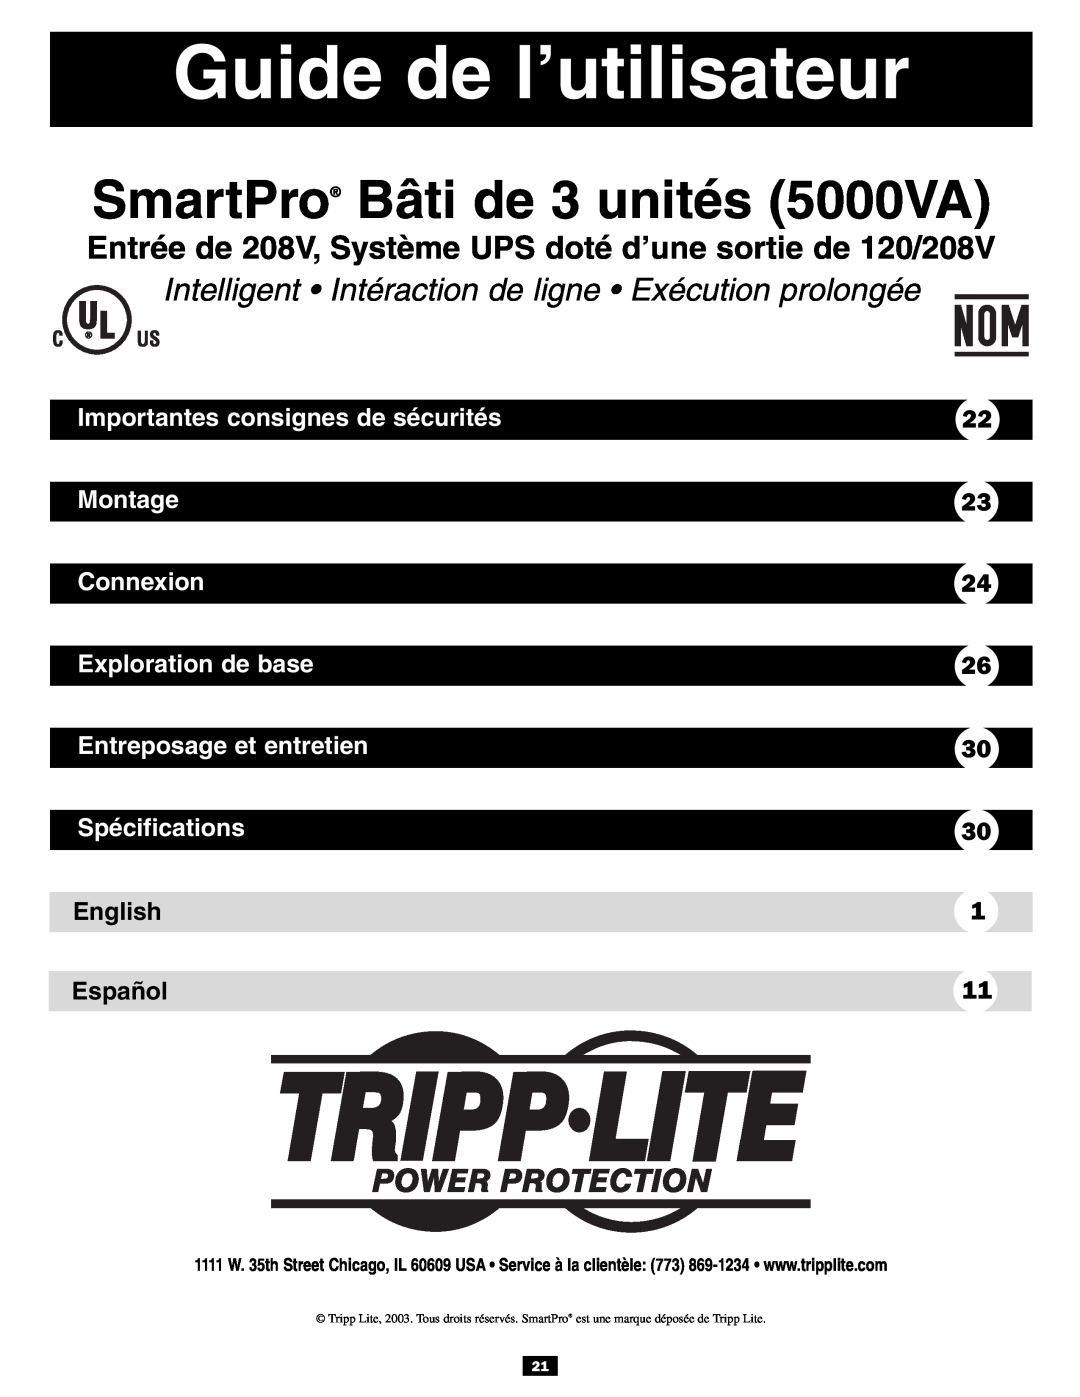 Tripp Lite 3U Guide de l’utilisateur, SmartPro Bâti de 3 unités 5000VA, Importantes consignes de sécurités, Montage 